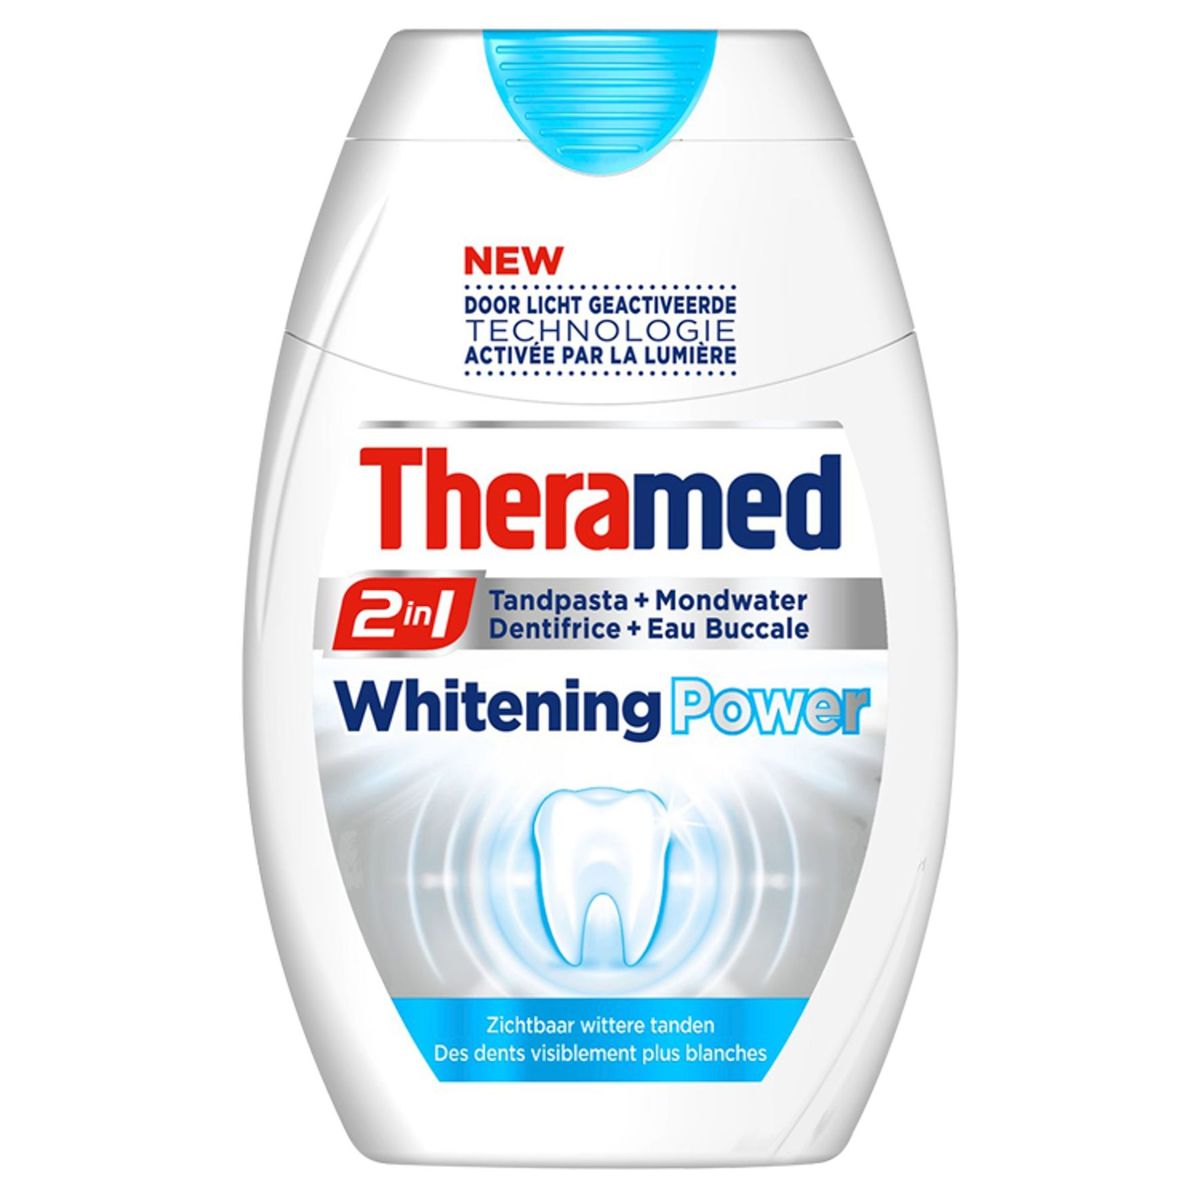 Theramed 2in1 Whitening Tandpasta + Mondwater 75 ml